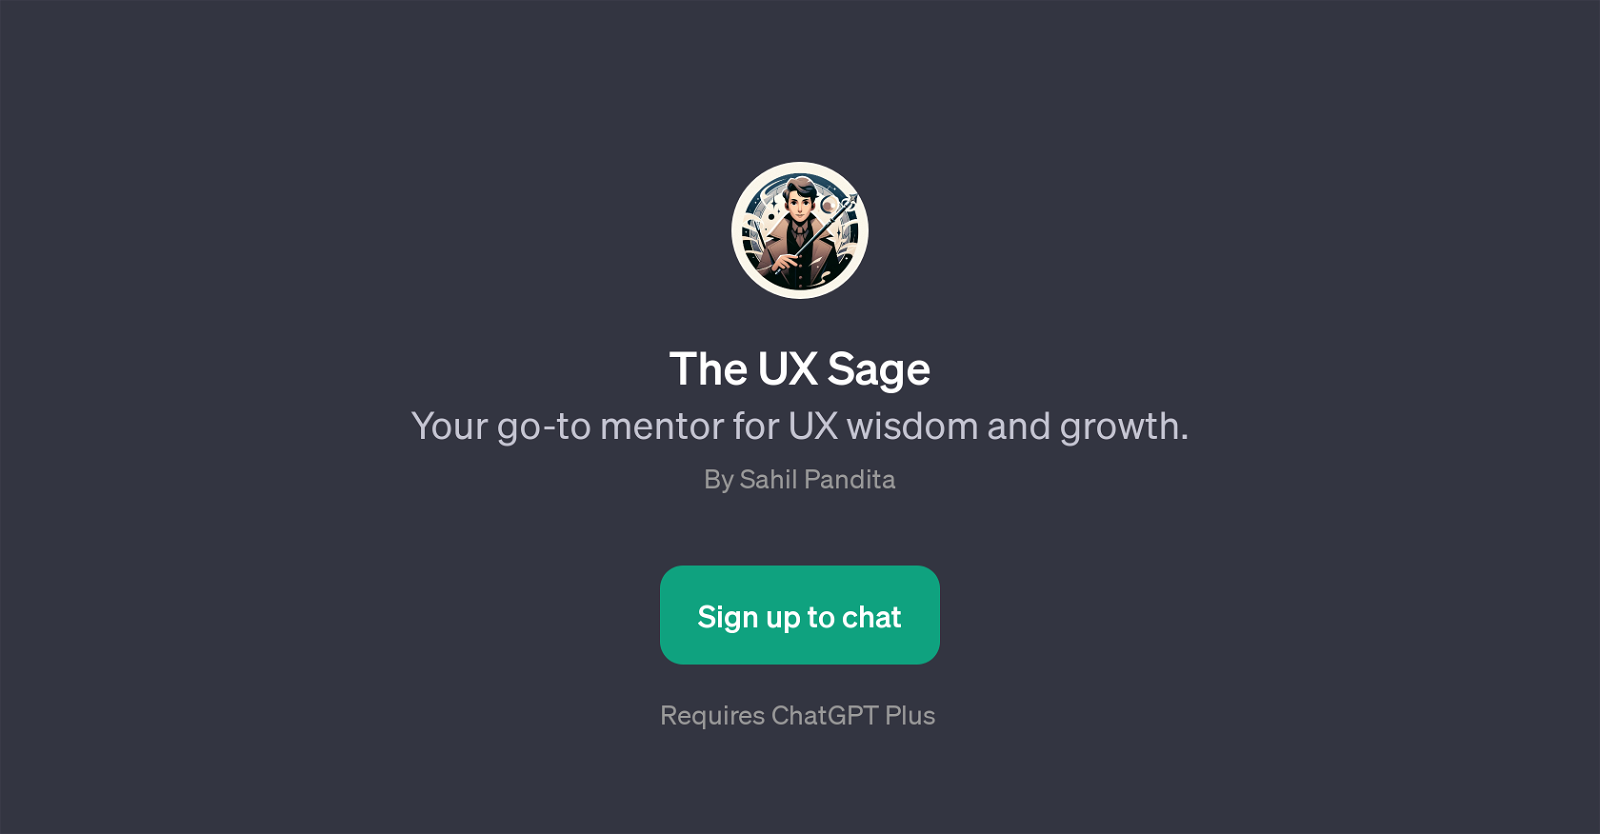 The UX Sage website